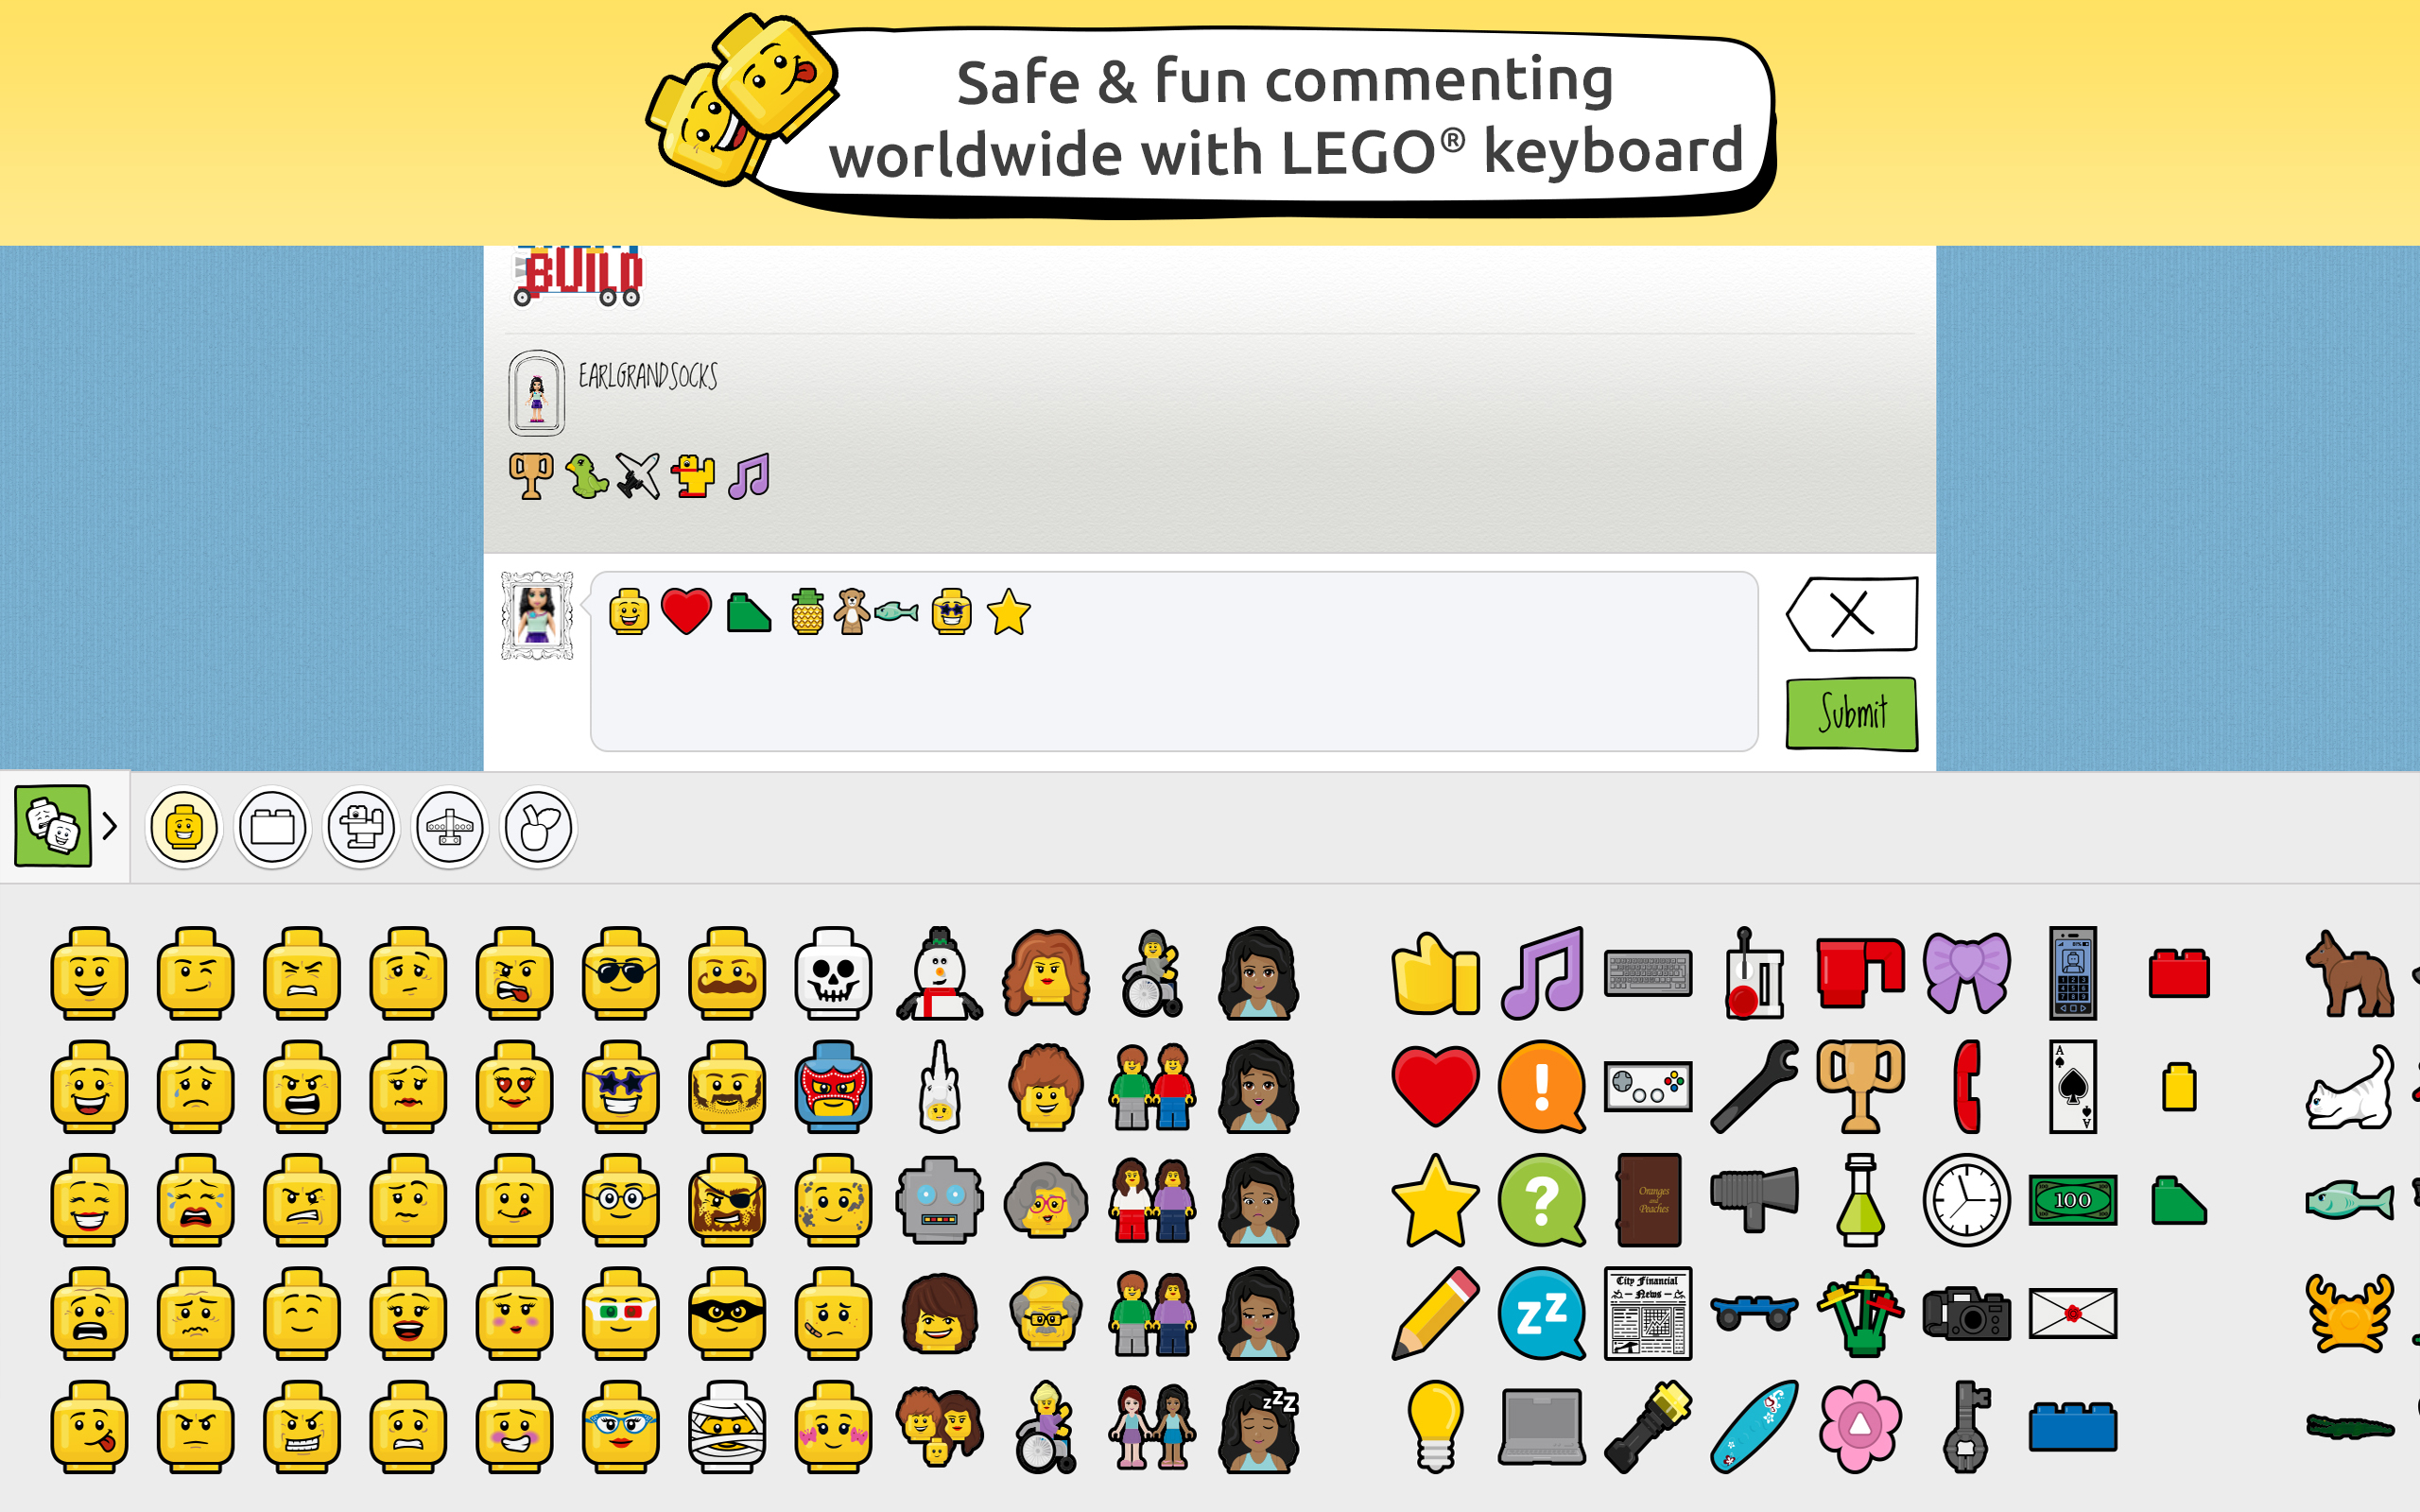 LEGO lança rede social segura para crianças compartilharem criações 31120206895283